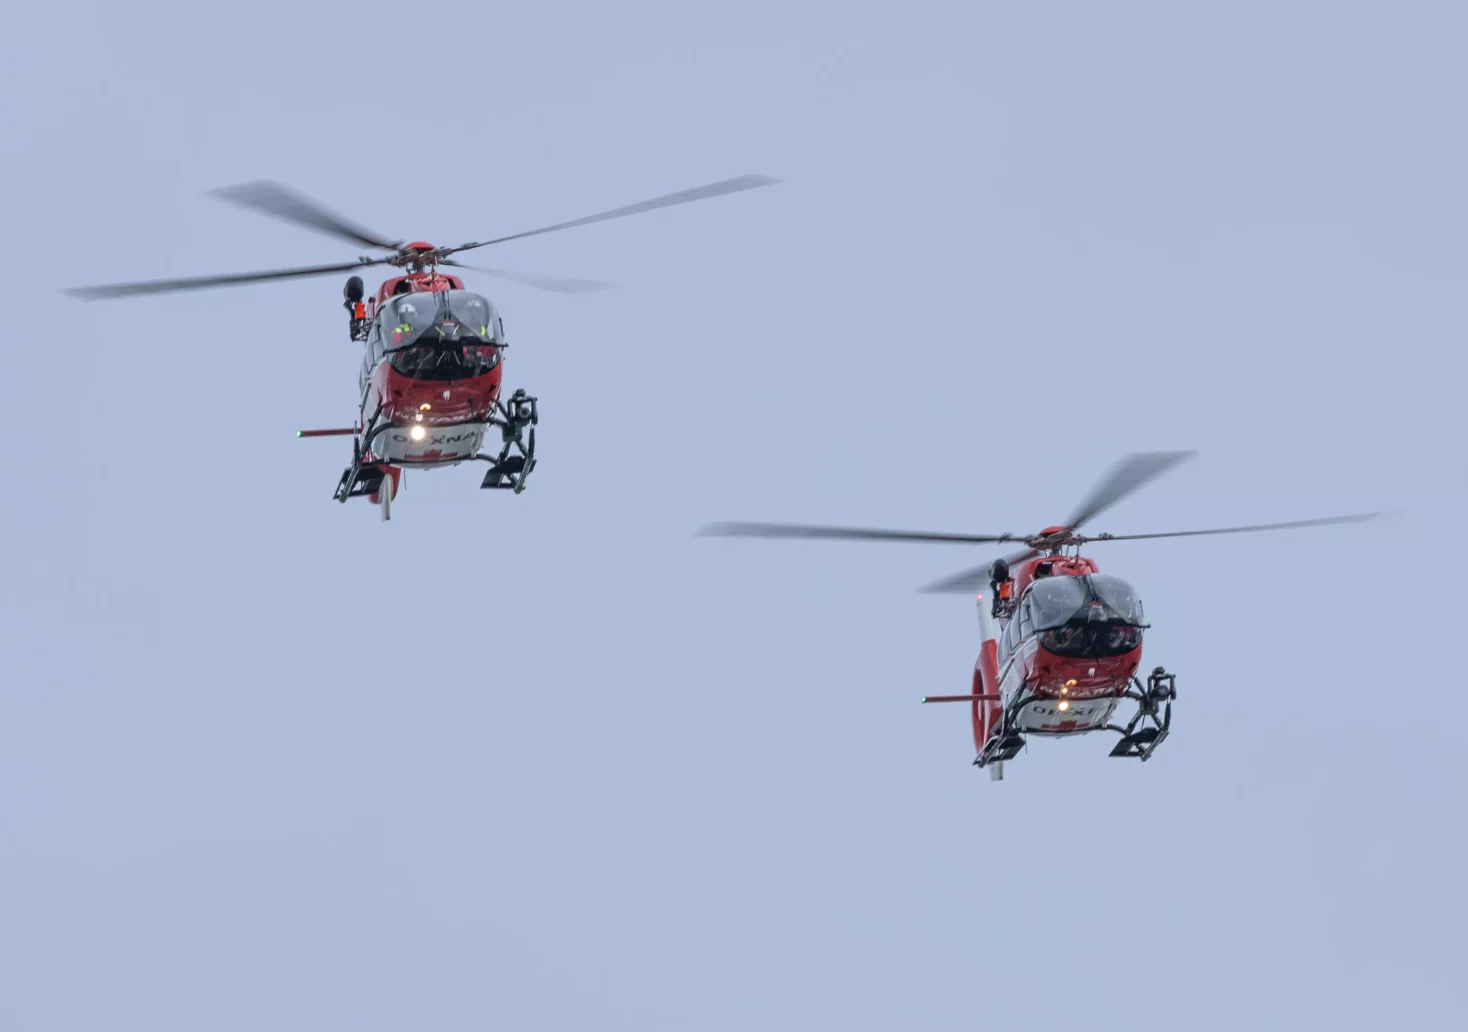 Bild auf 5min.at zeigt zwei Hubschrauber in der Luft.